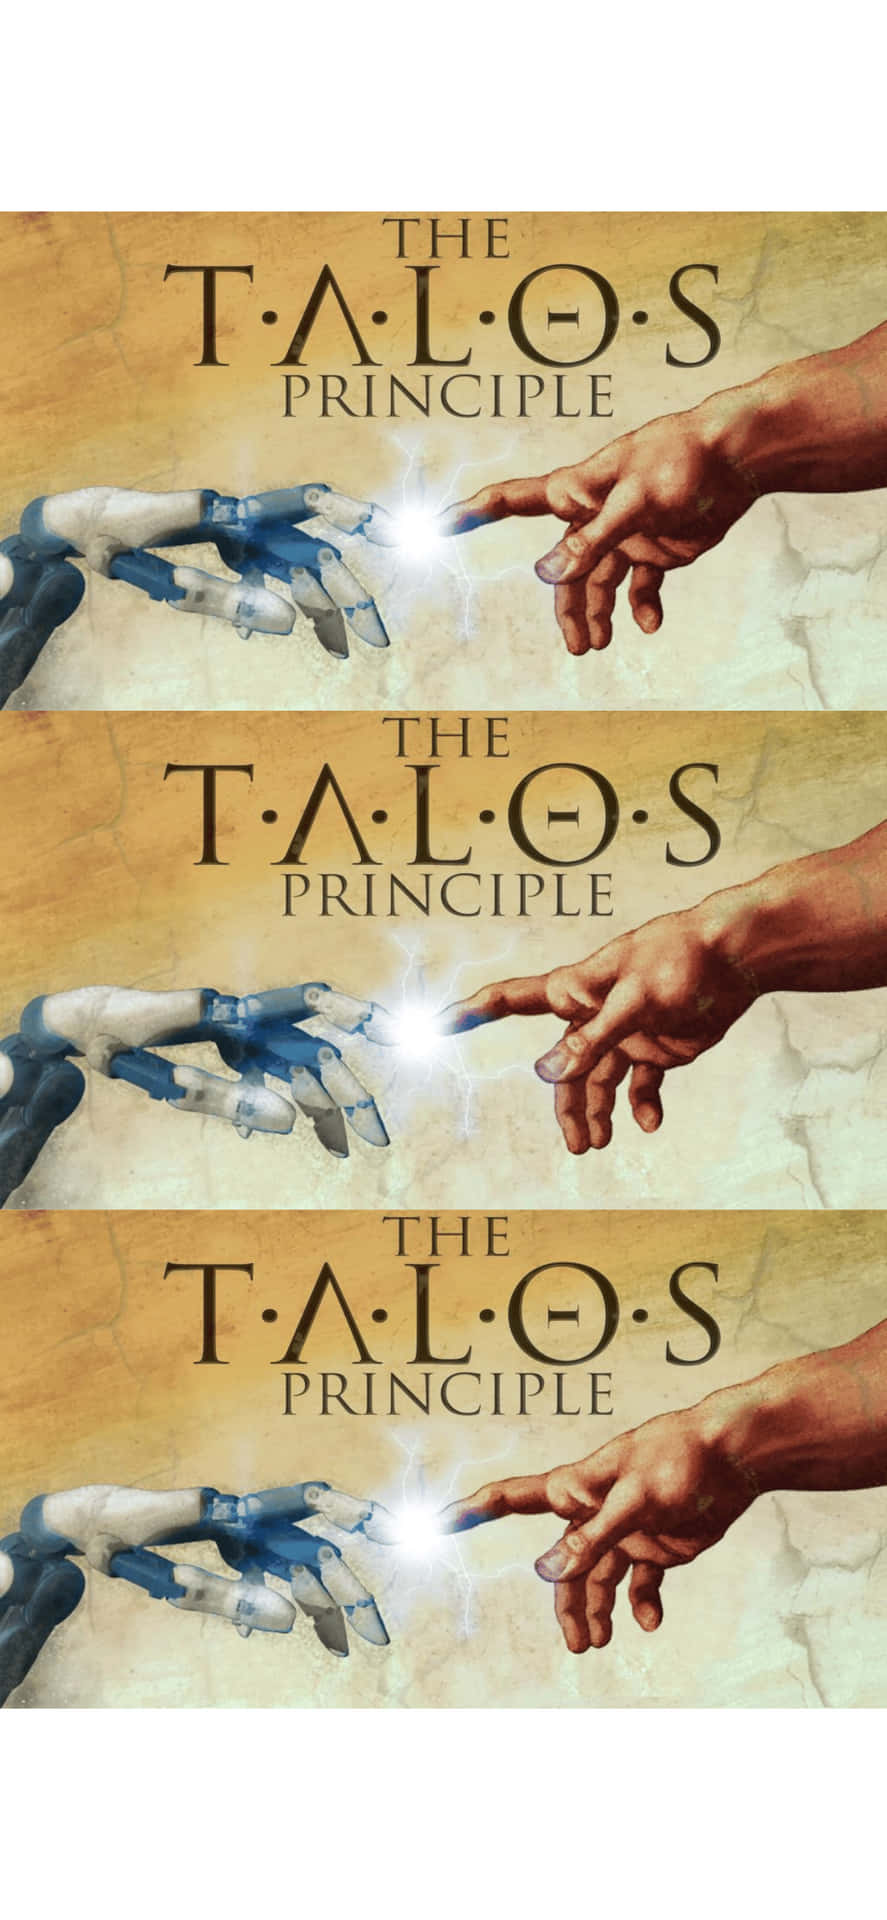 the talo's principle - talos principle - talos principle - talos principle - t